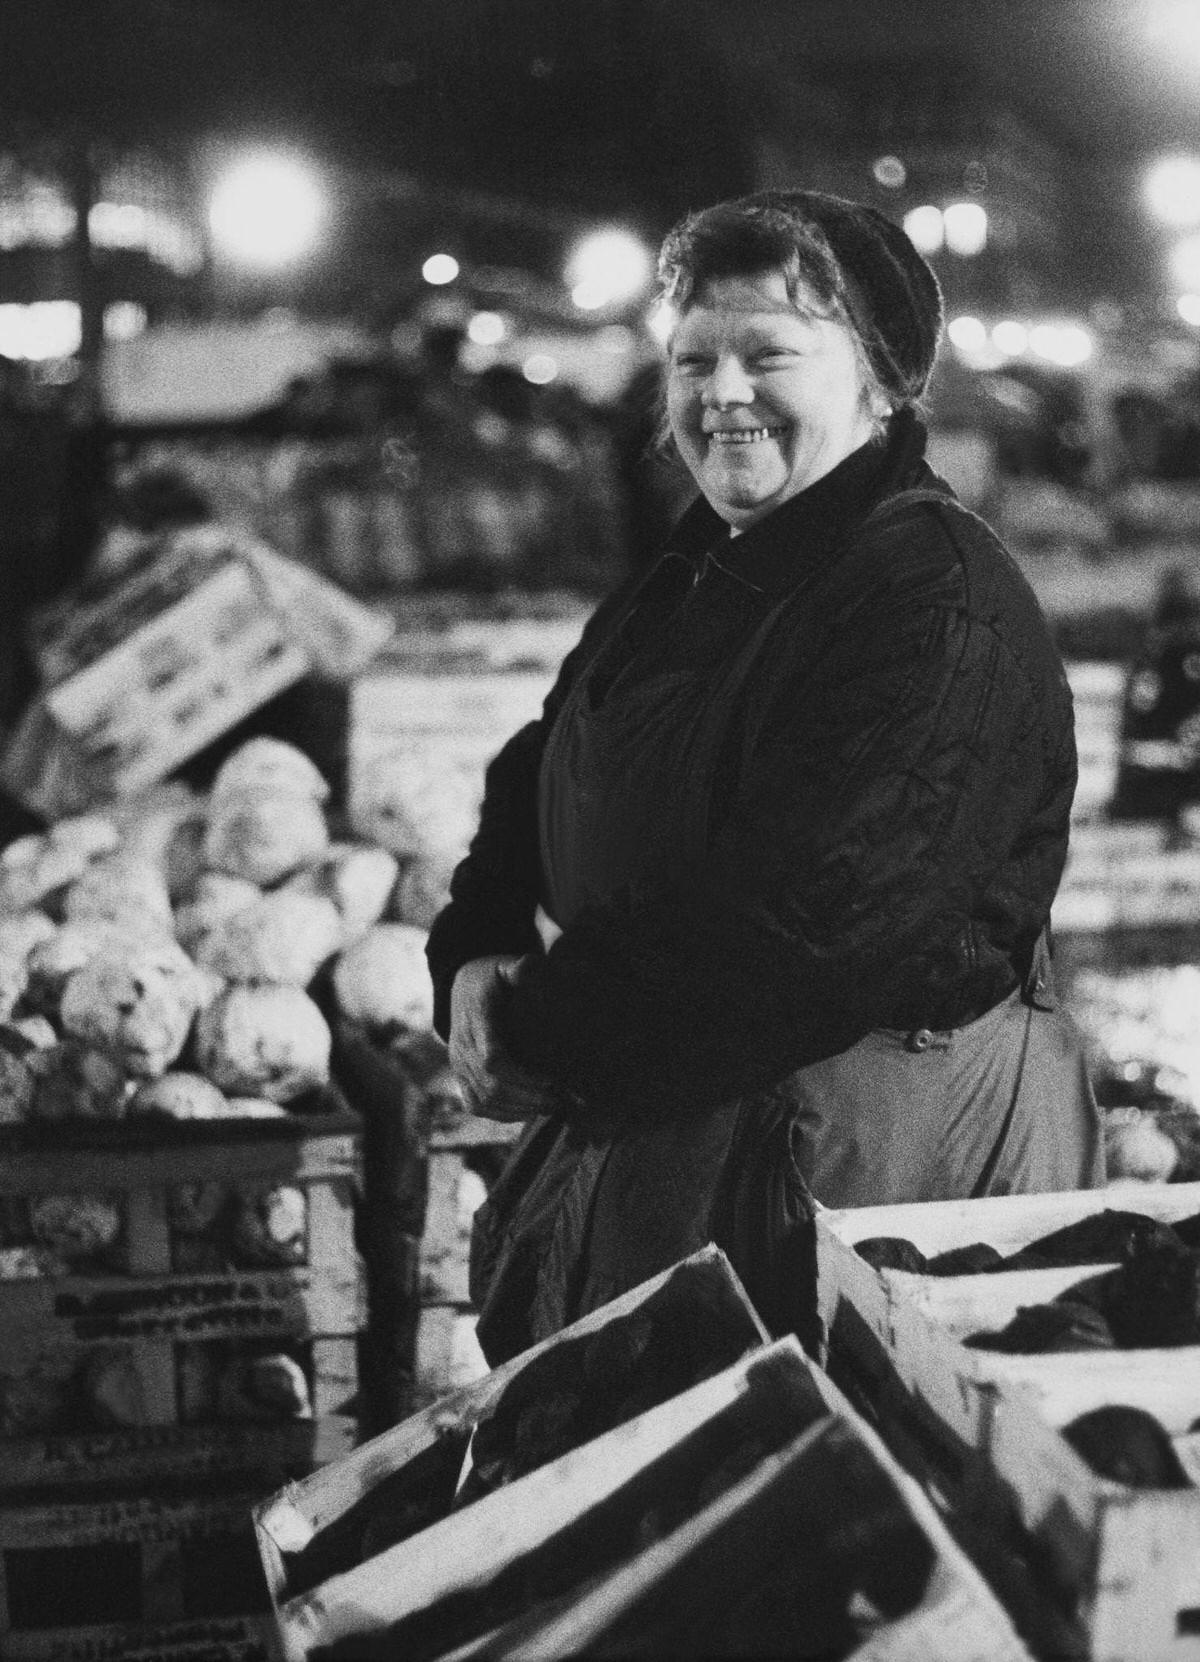 A Wholesaler Smiling, Les Halles, 1960